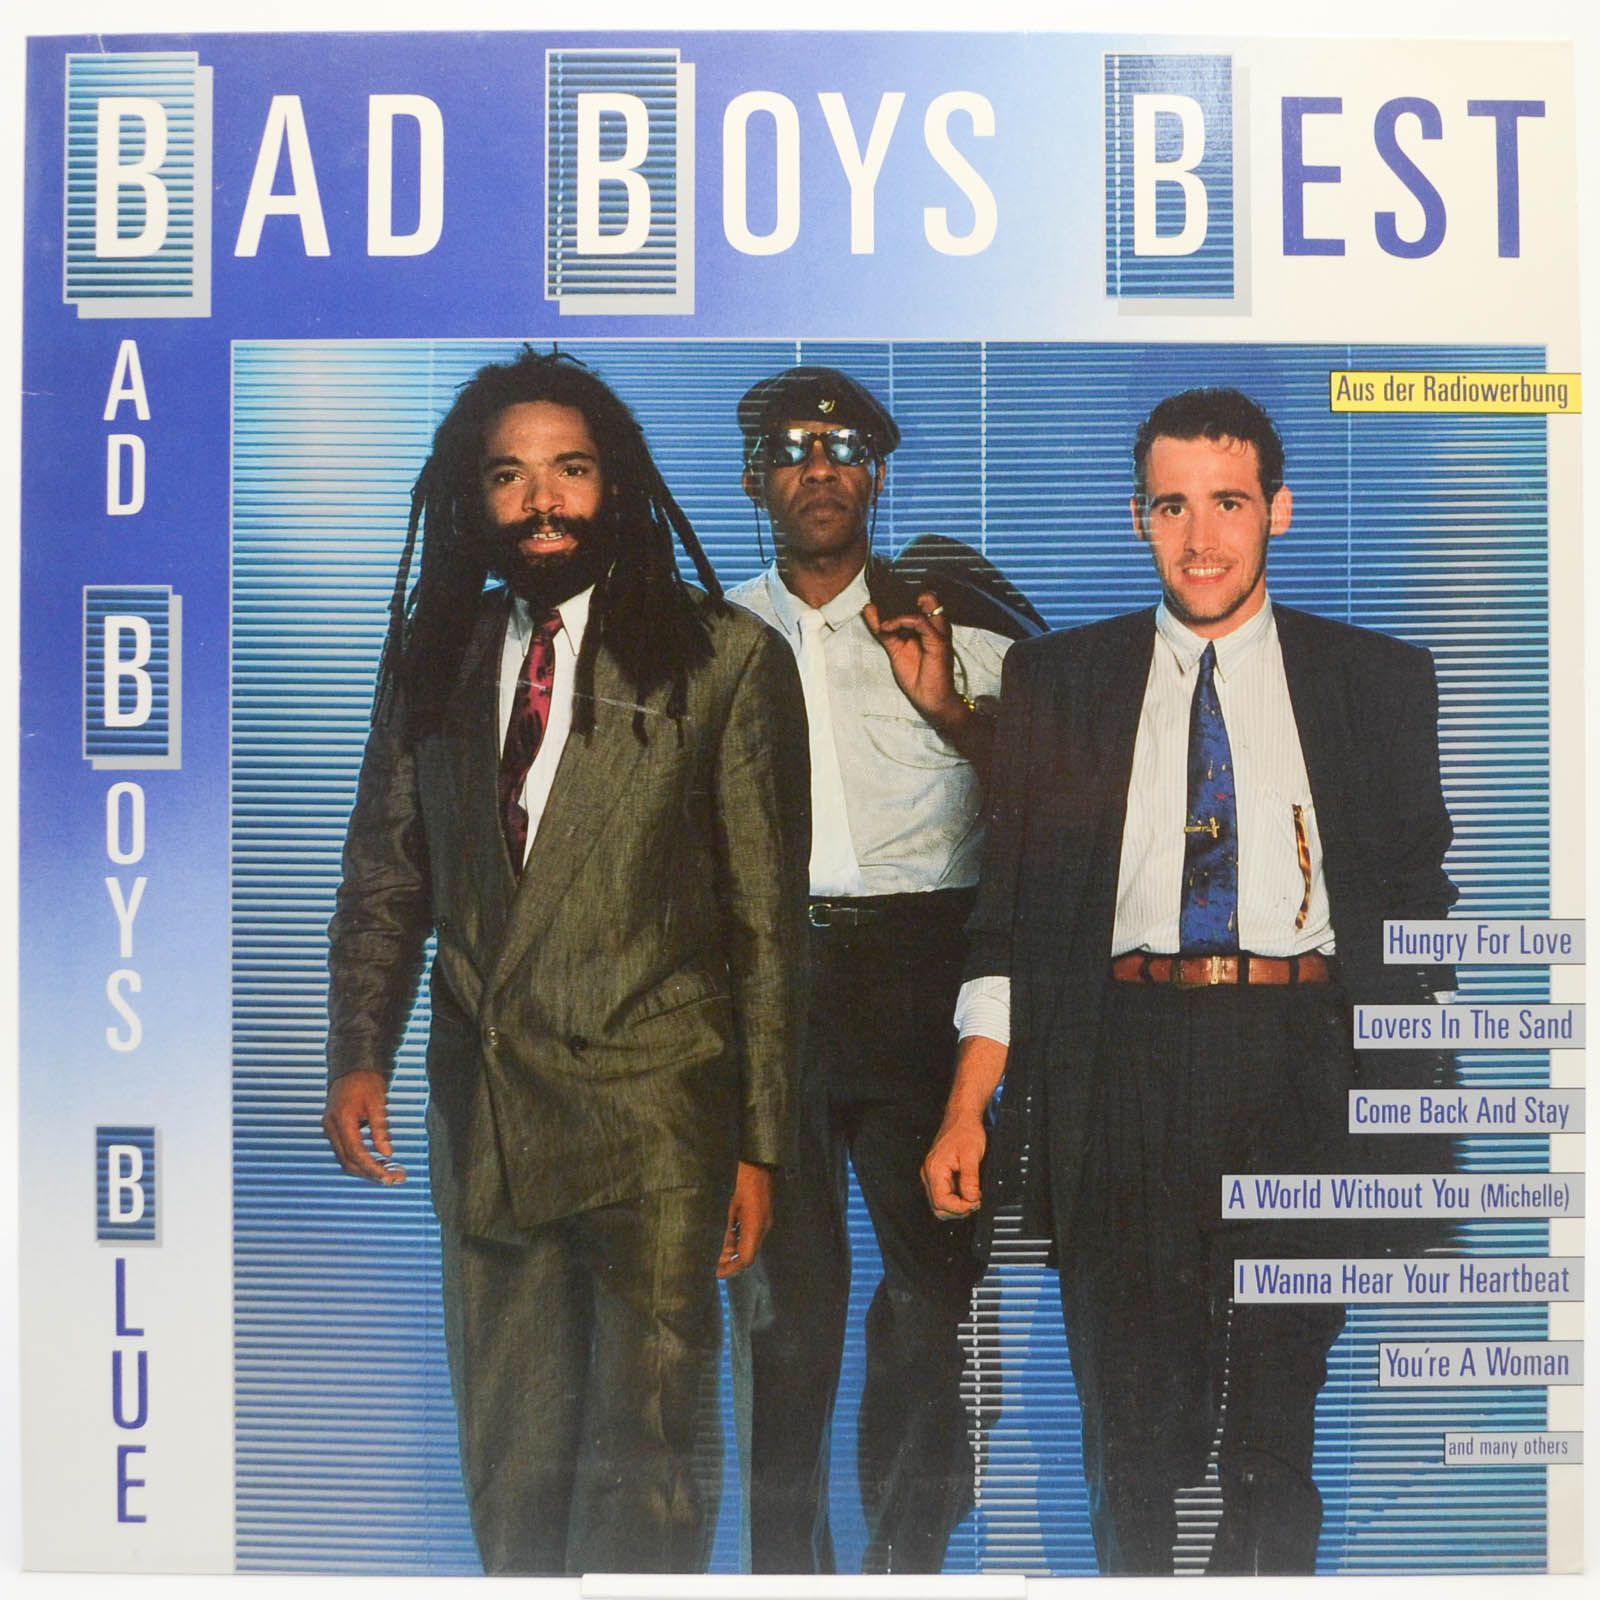 Bad Boys Blue — Bad Boys Best, 1989